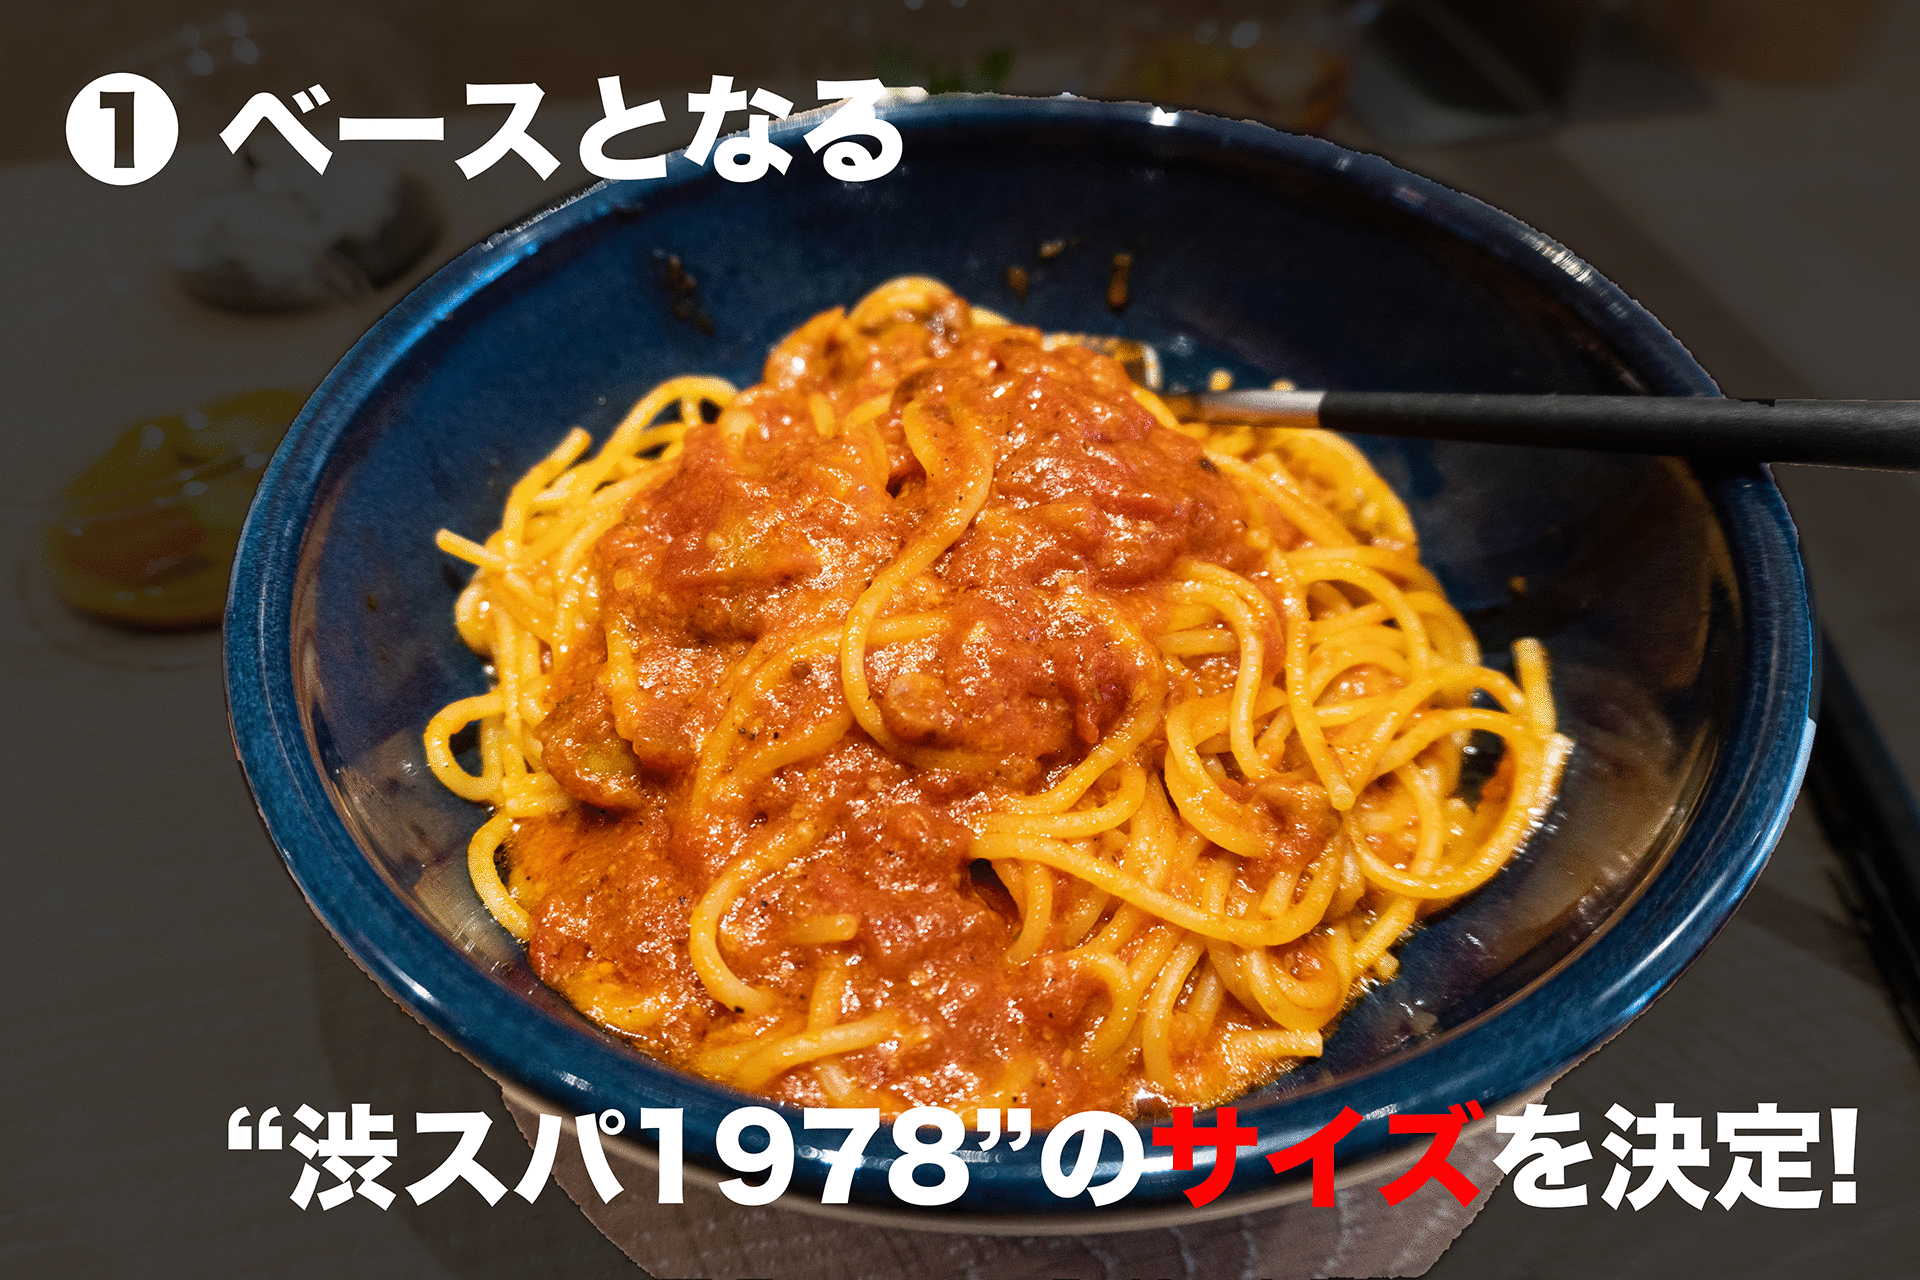 1978年渋谷で生まれたスパゲティ